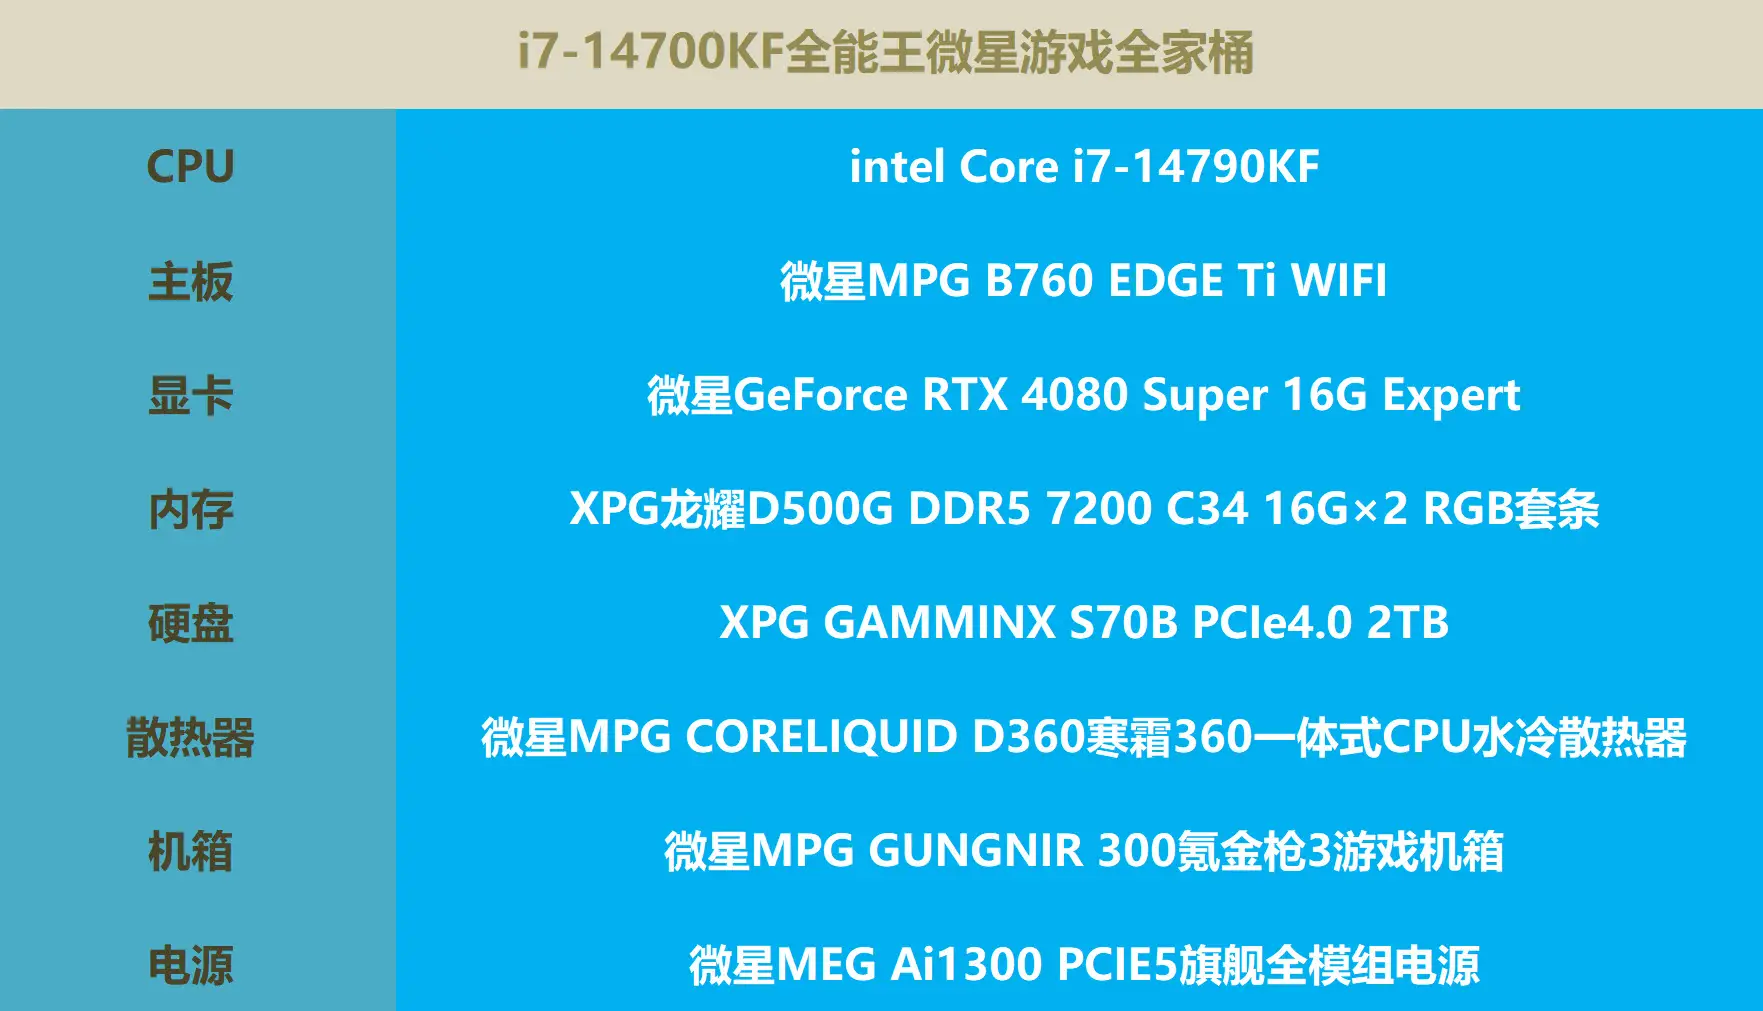 DDR4 内存：高速性能与高功耗的矛盾，能耗上限高达 1.2V 令人咋舌  第5张